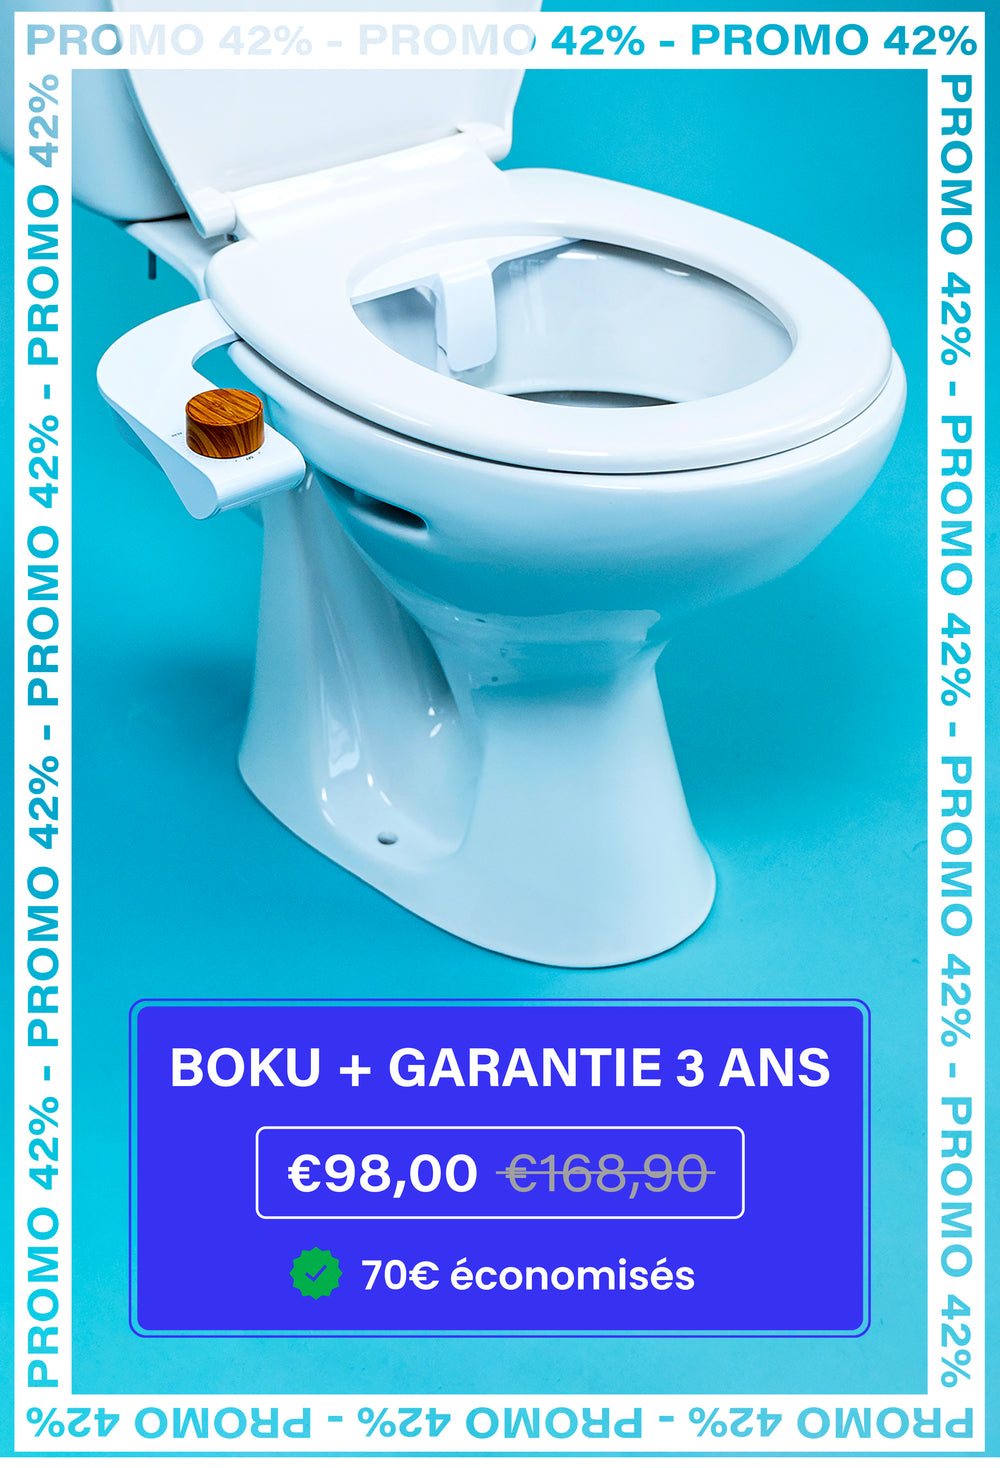 Boku, l'alternative au papier toilette